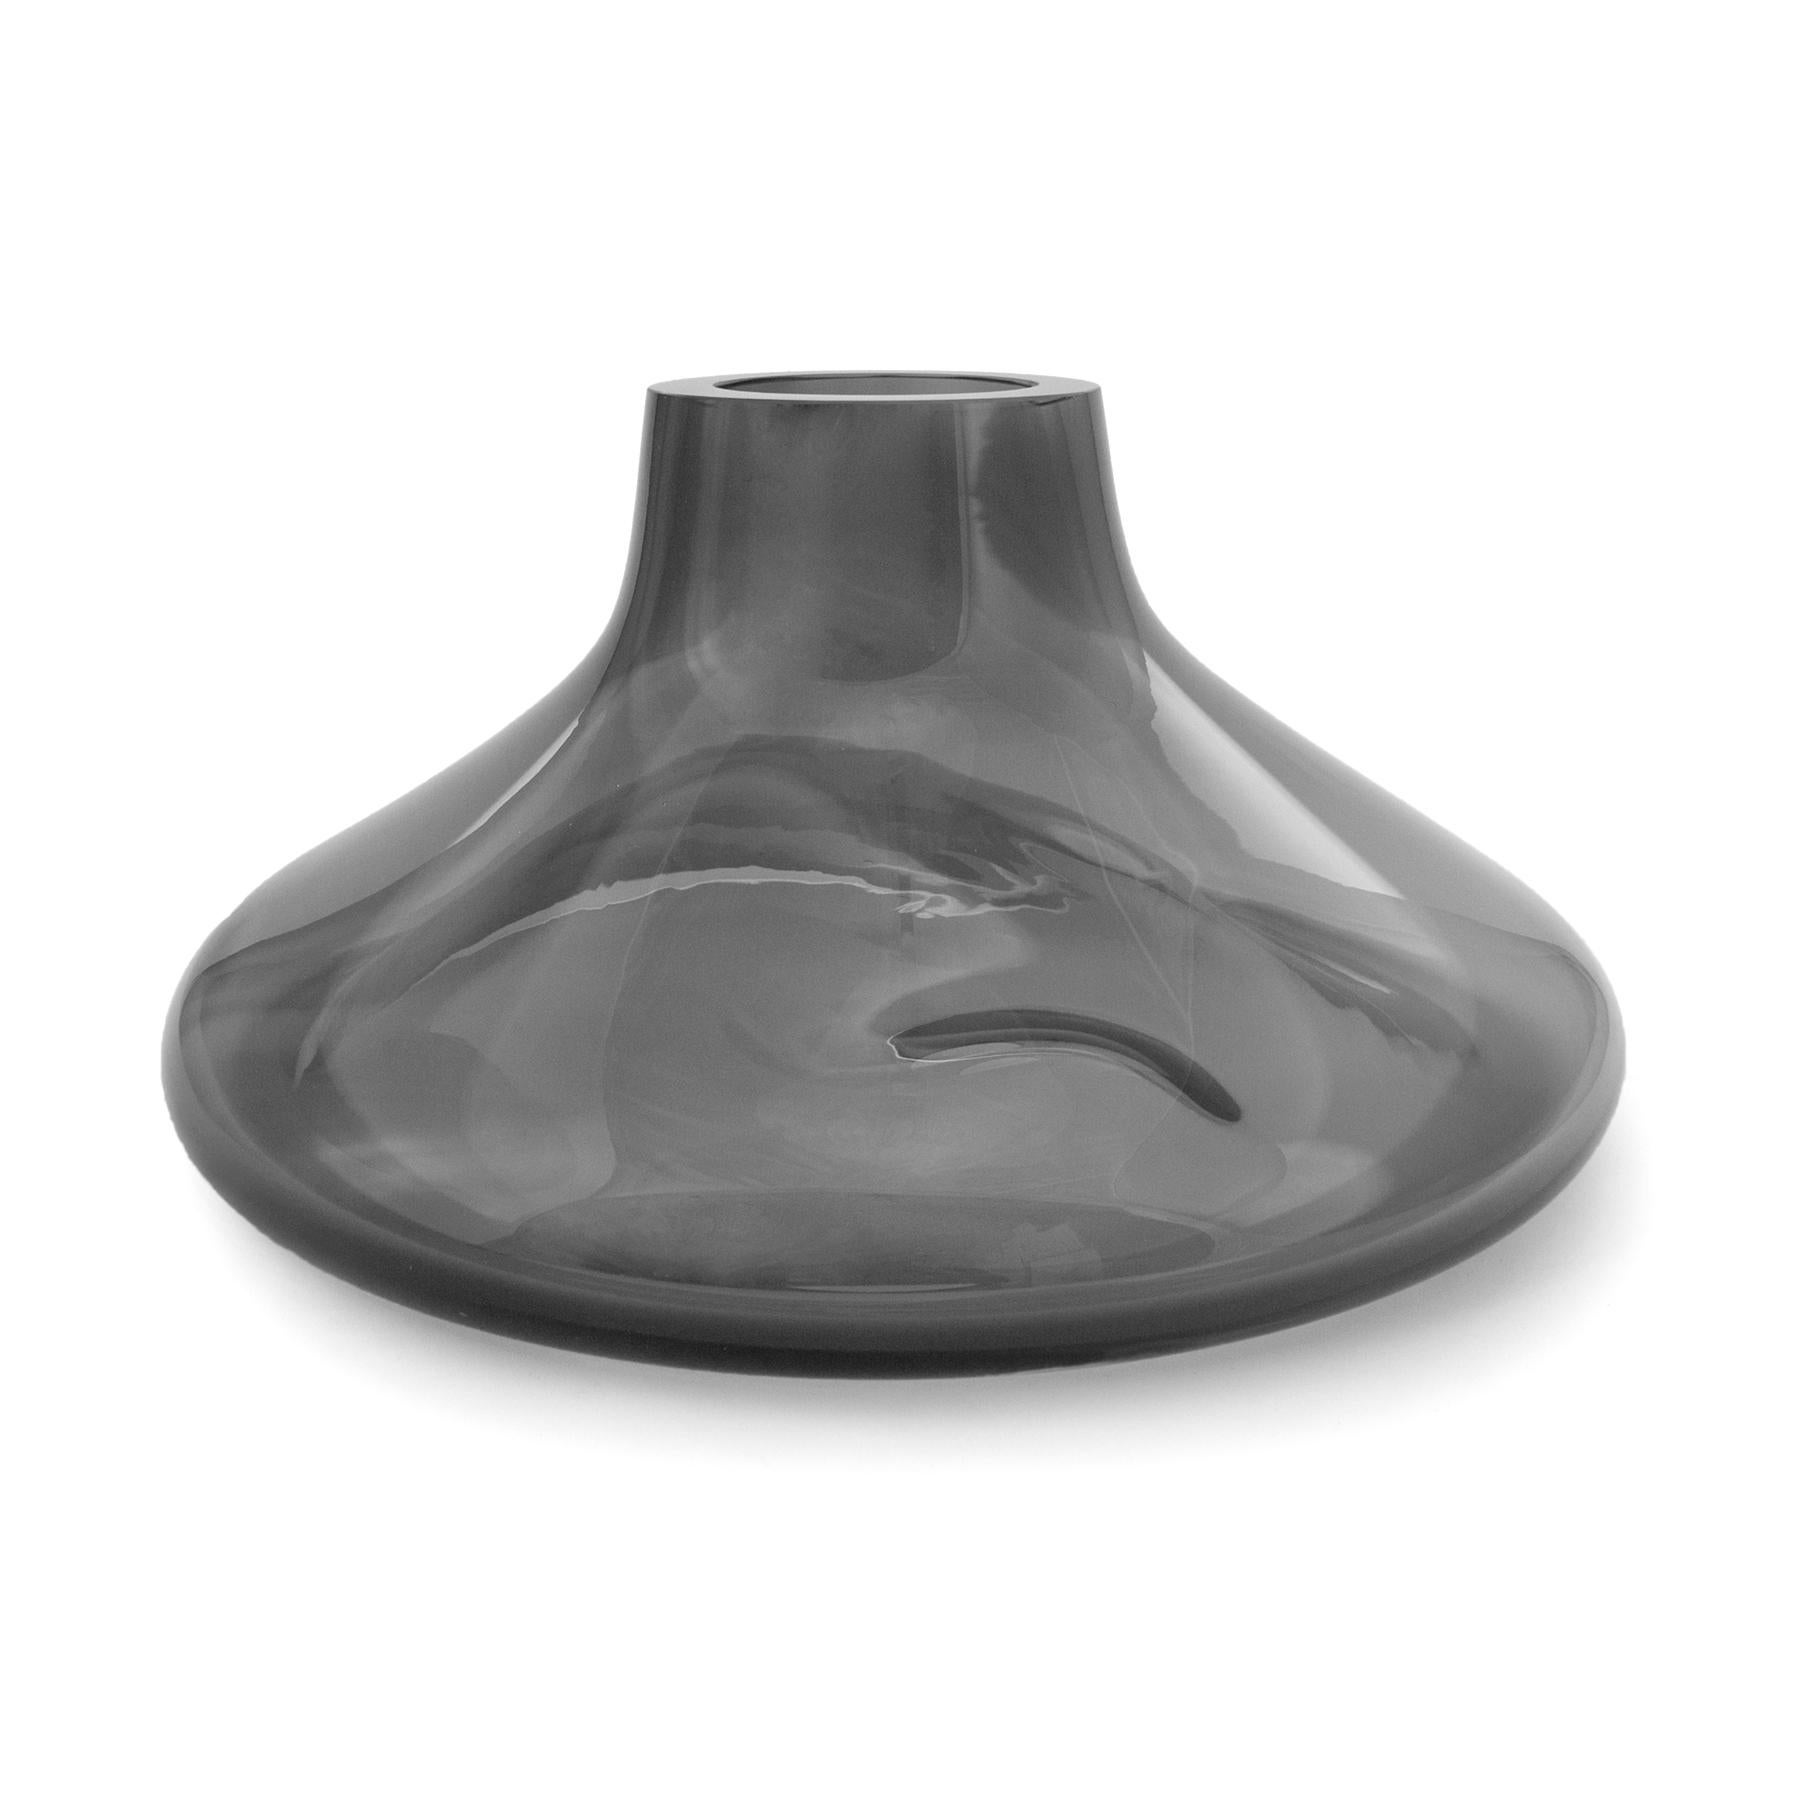 Makemake silver smoke L Vase + Schale von Eloa.
Nicht UL-gelistet 
MATERIAL: Glas
Abmessungen: T40 x B40 x H25 cm
Auch in anderen Farben und Abmessungen erhältlich.

Der Makemake erinnert an den Ring des Jupiters. Das Objekt wurde mit einer